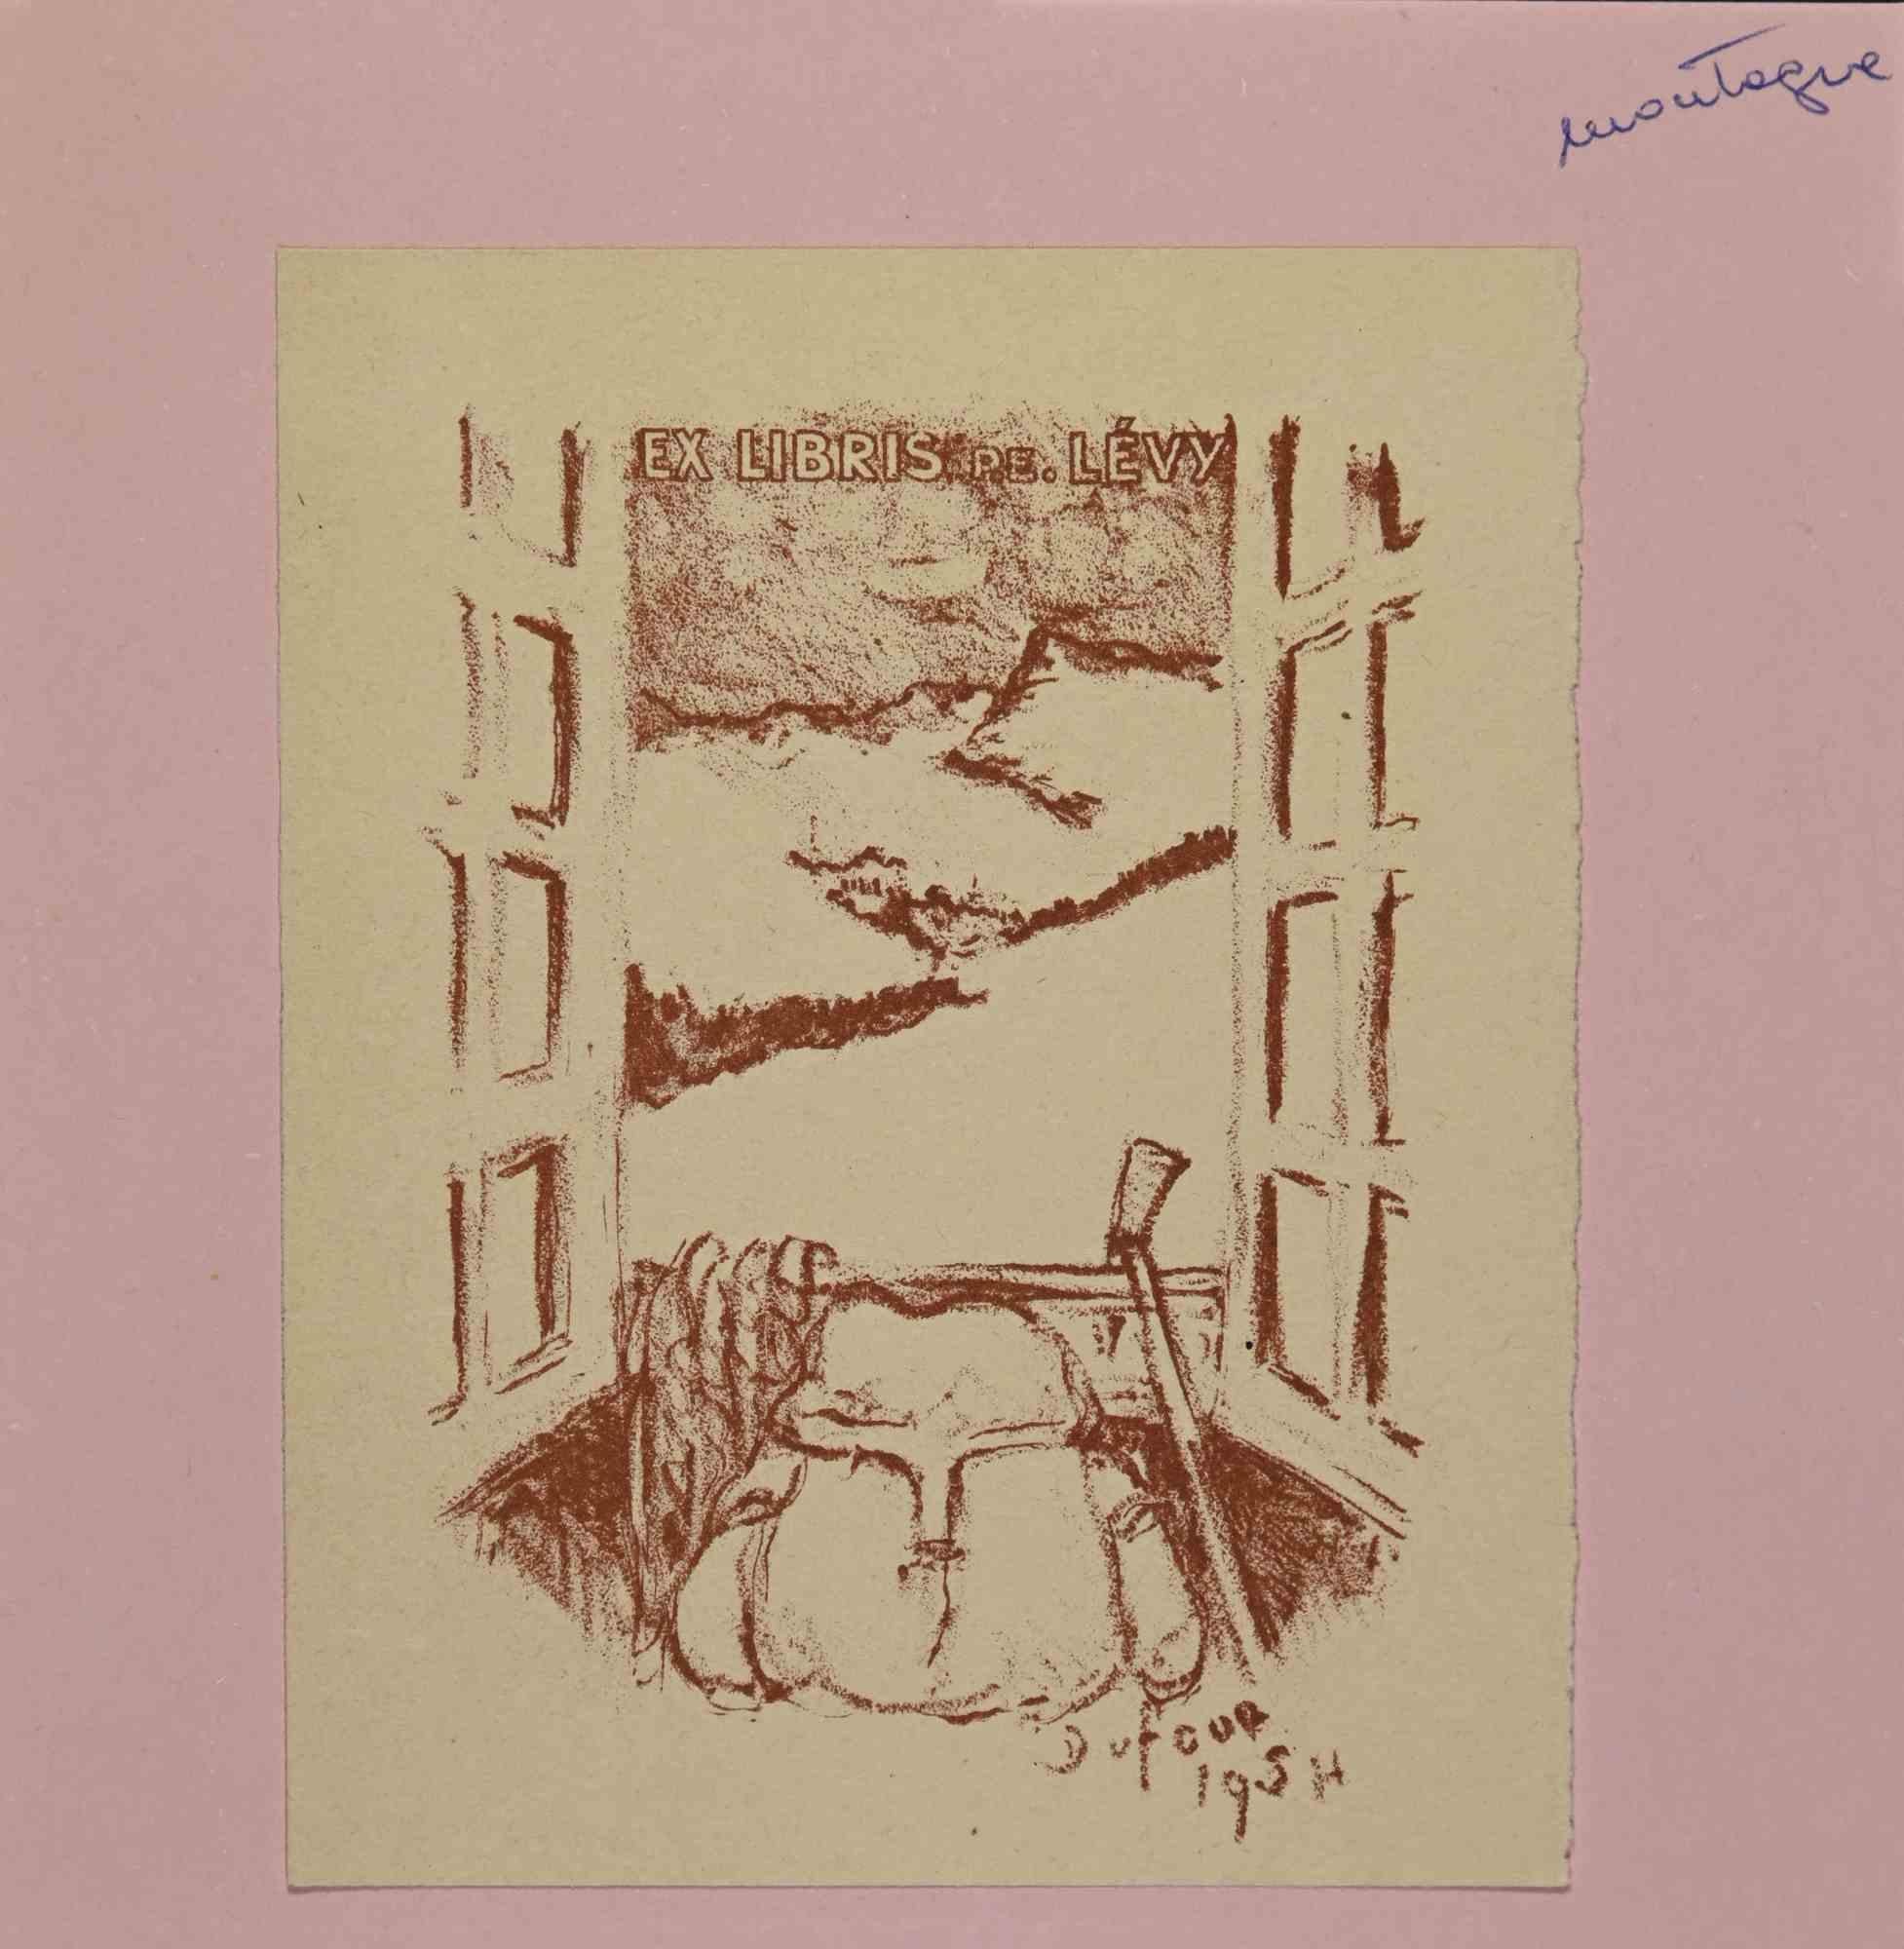 Ex Libris - Lévy ist ein Kunstwerk des französischen Künstlers Émilien Dufour (1894-1975) aus dem Jahr 1954. 

Lithographie auf Papier. In der Platte signiert und am rechten Rand datiert. 

Das Werk ist auf rosa Karton geklebt.

Abmessungen